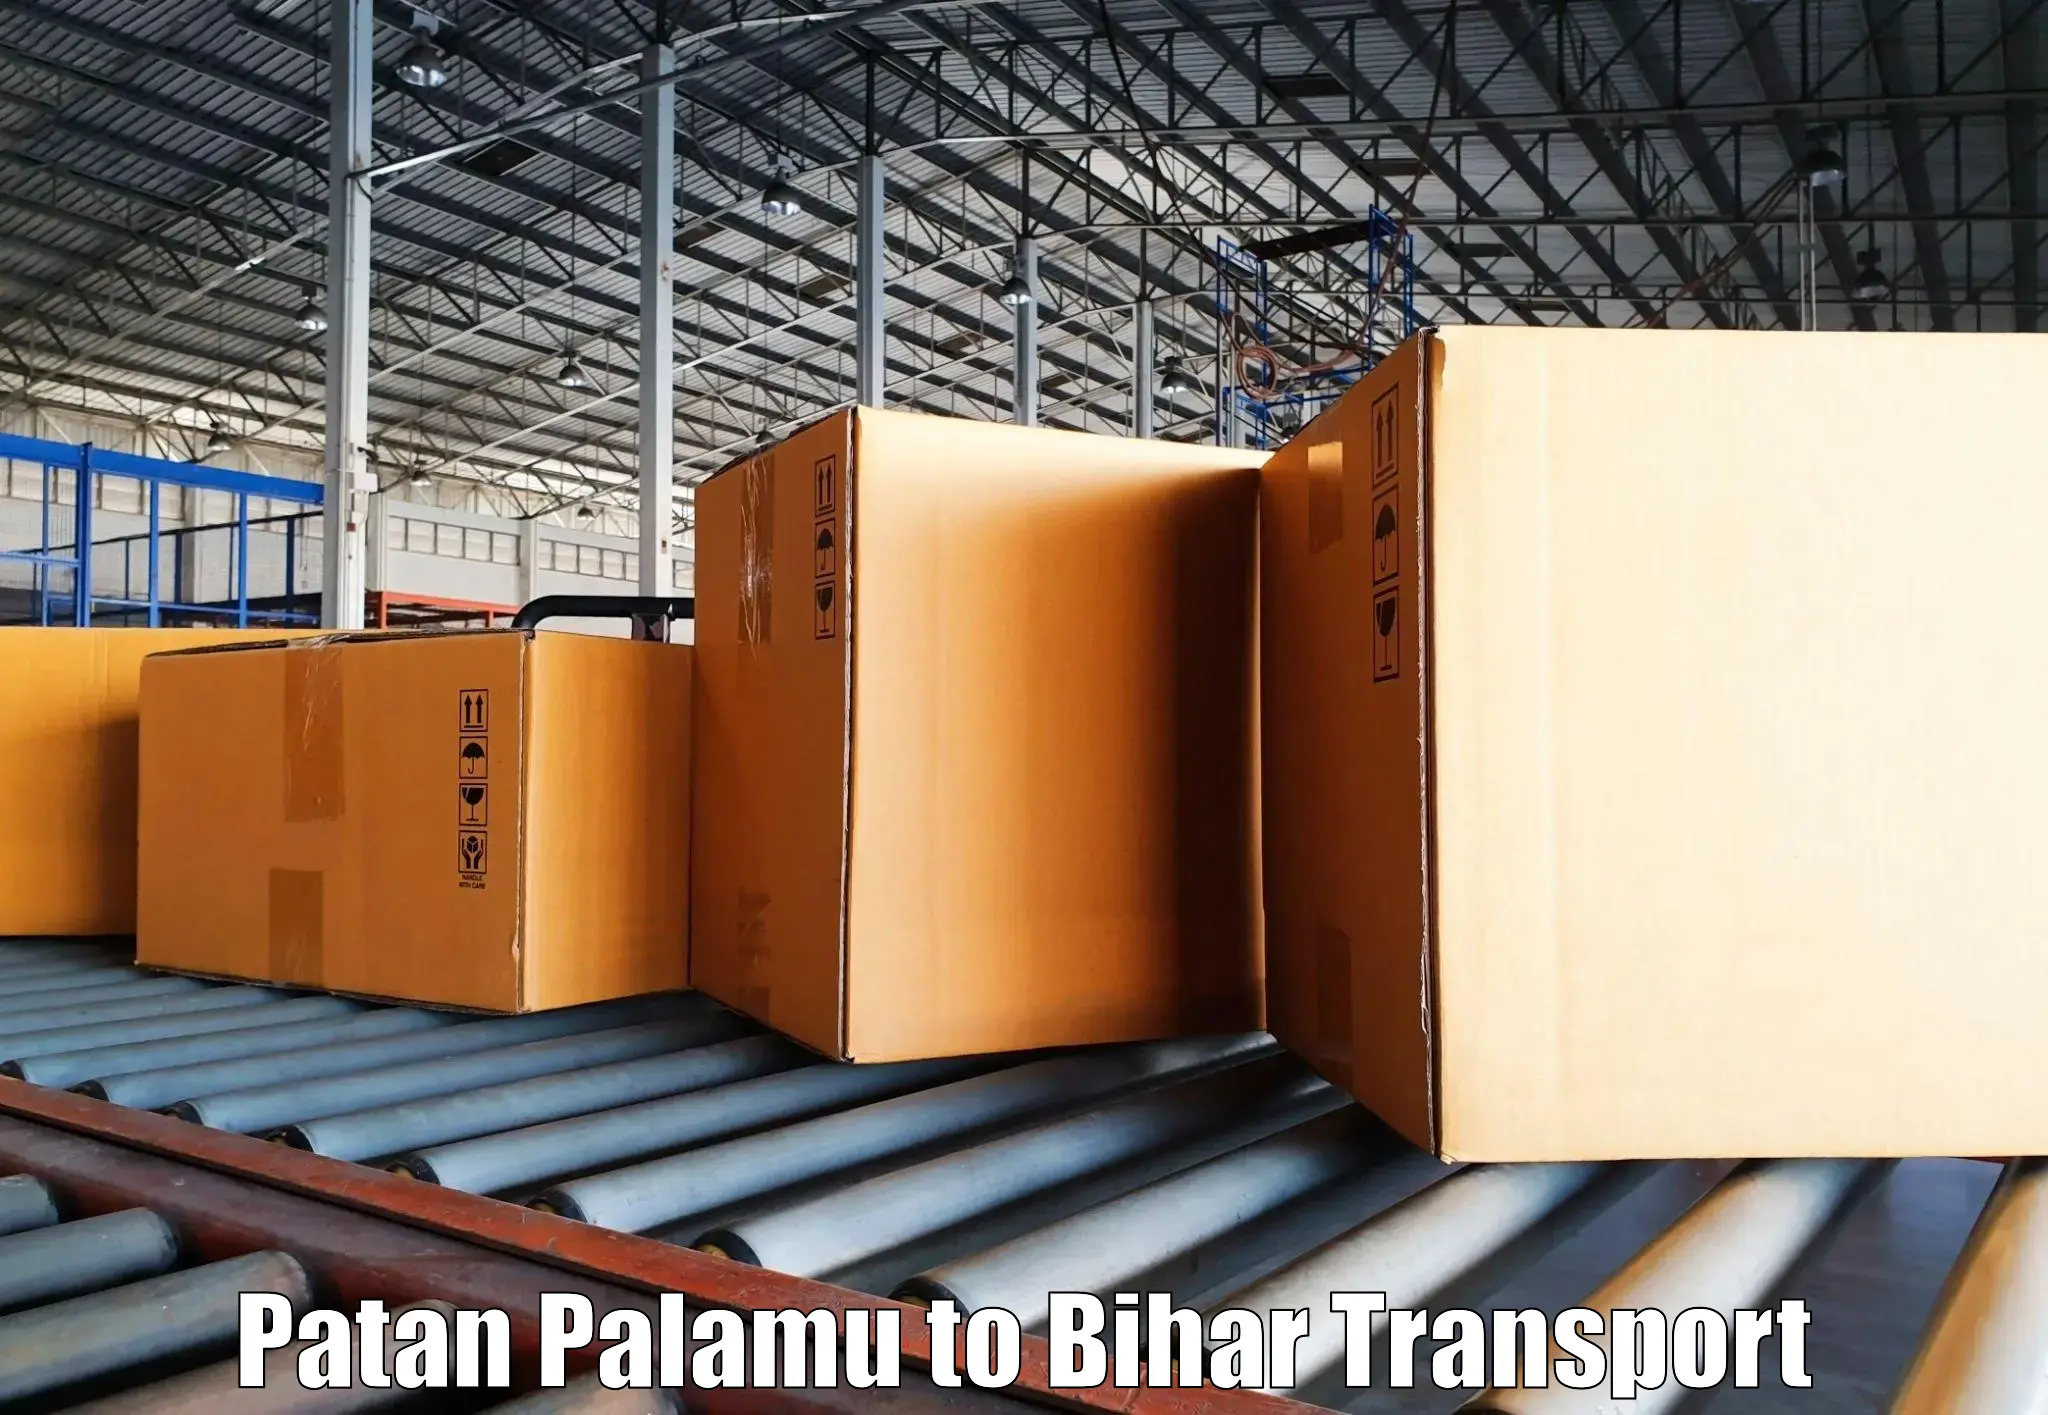 Bike shipping service Patan Palamu to Bihar